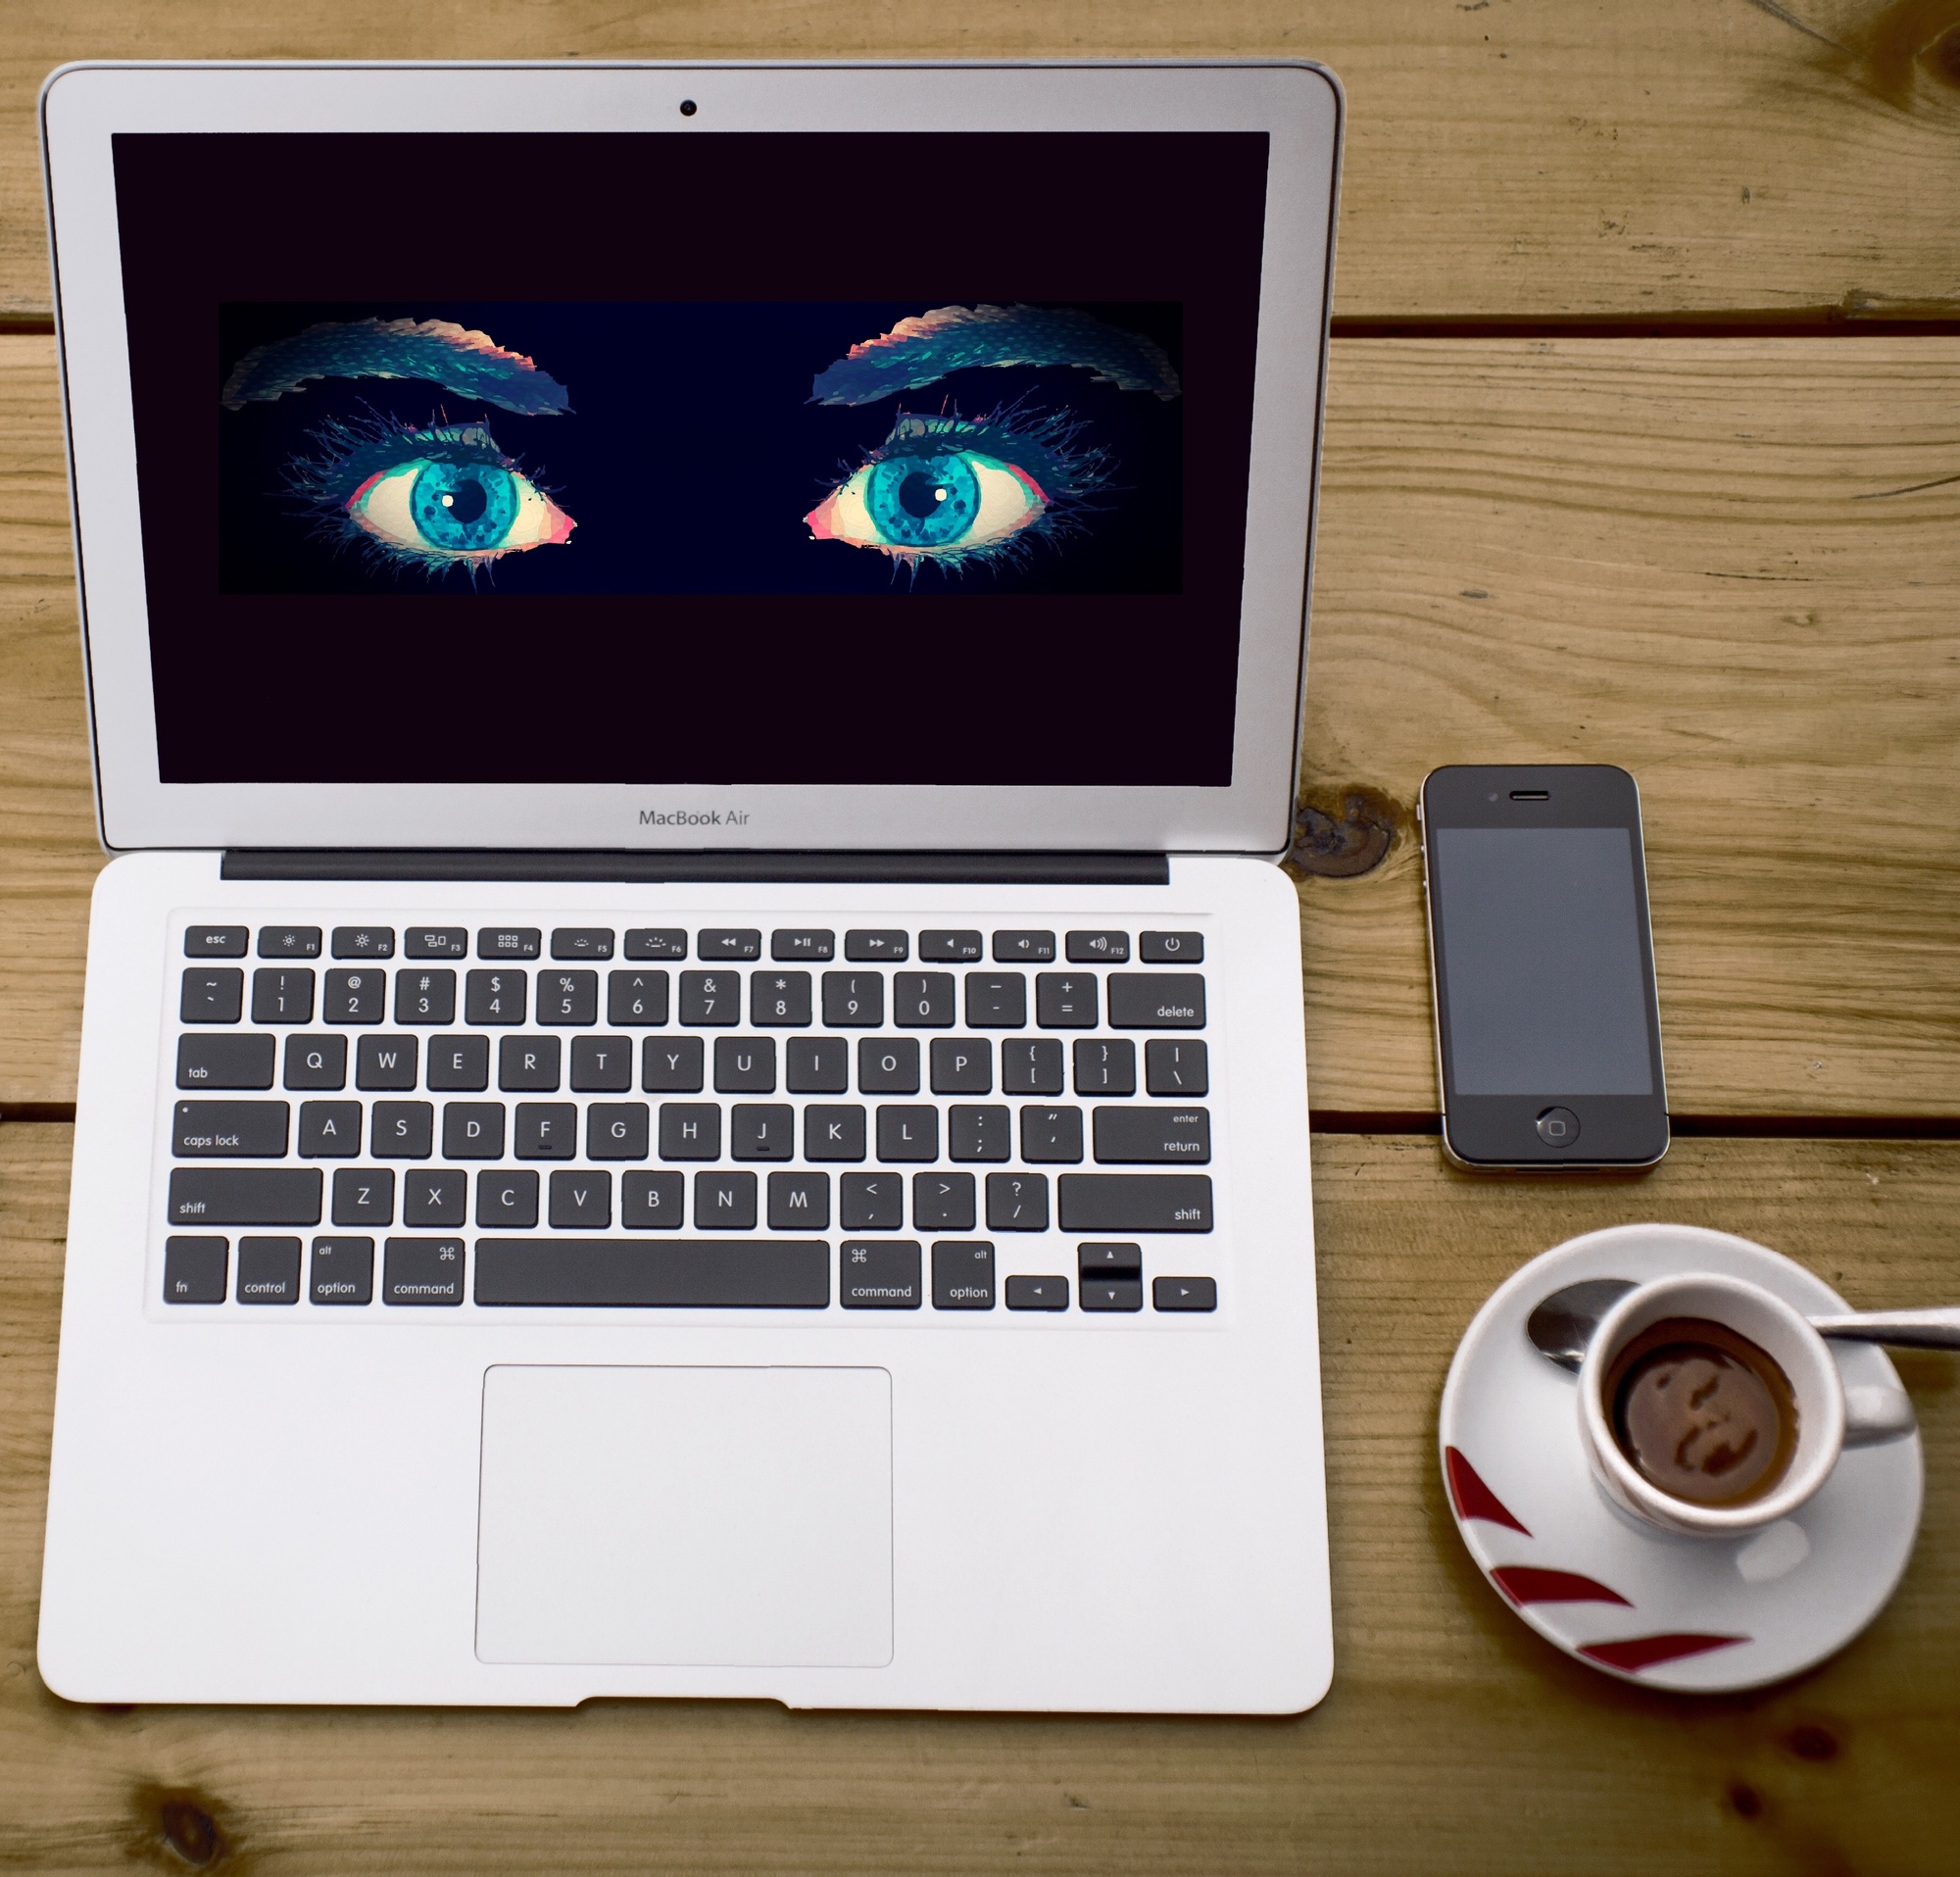 Foto: MacBook mit Bildschirm, der überwachende Augen zeigt